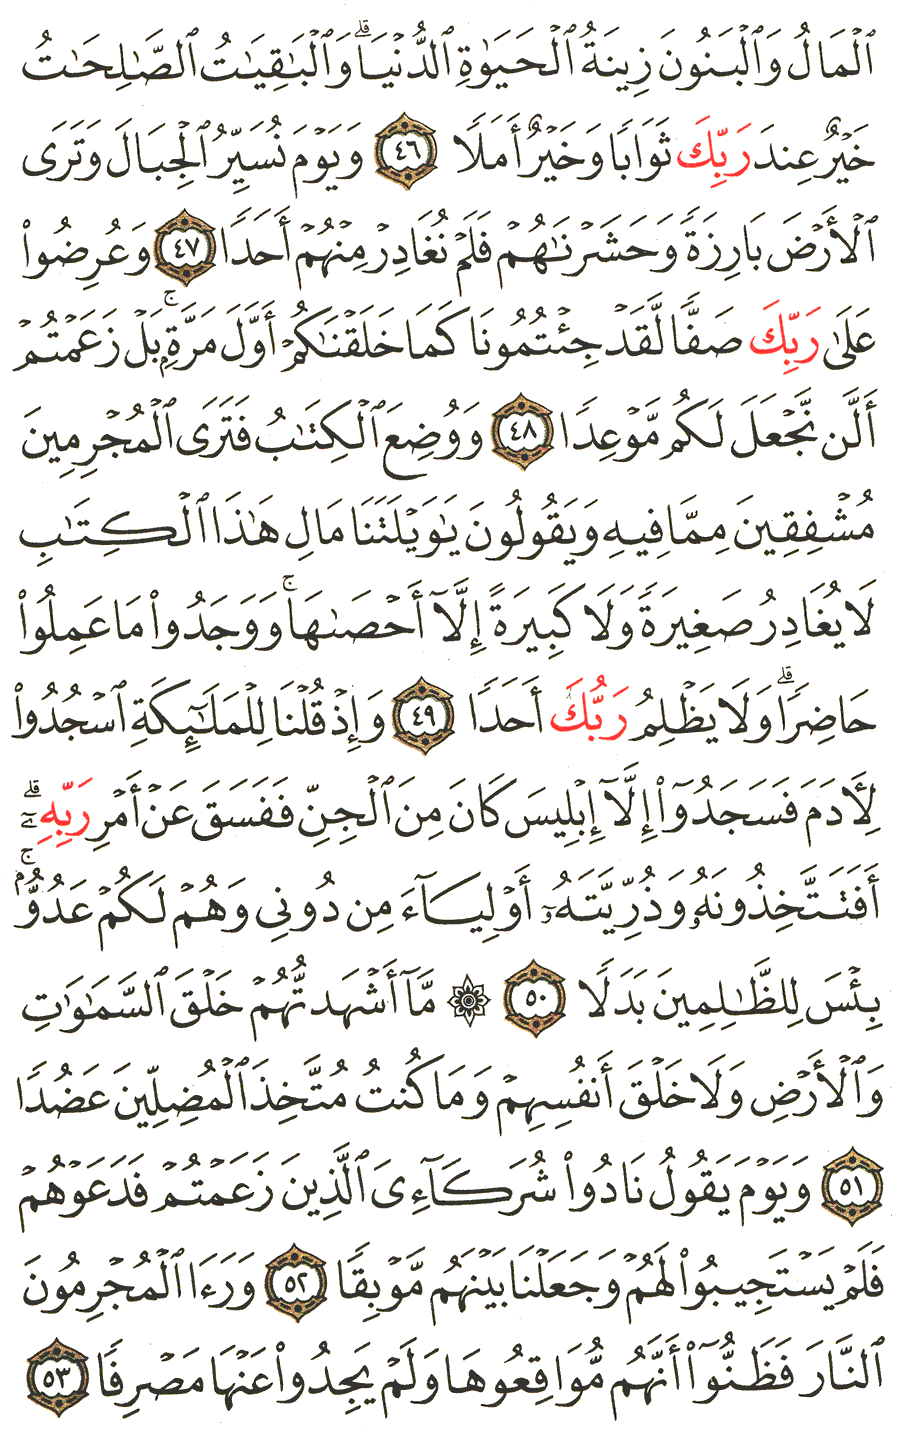 الصفحة 299 من القرآن الكريم